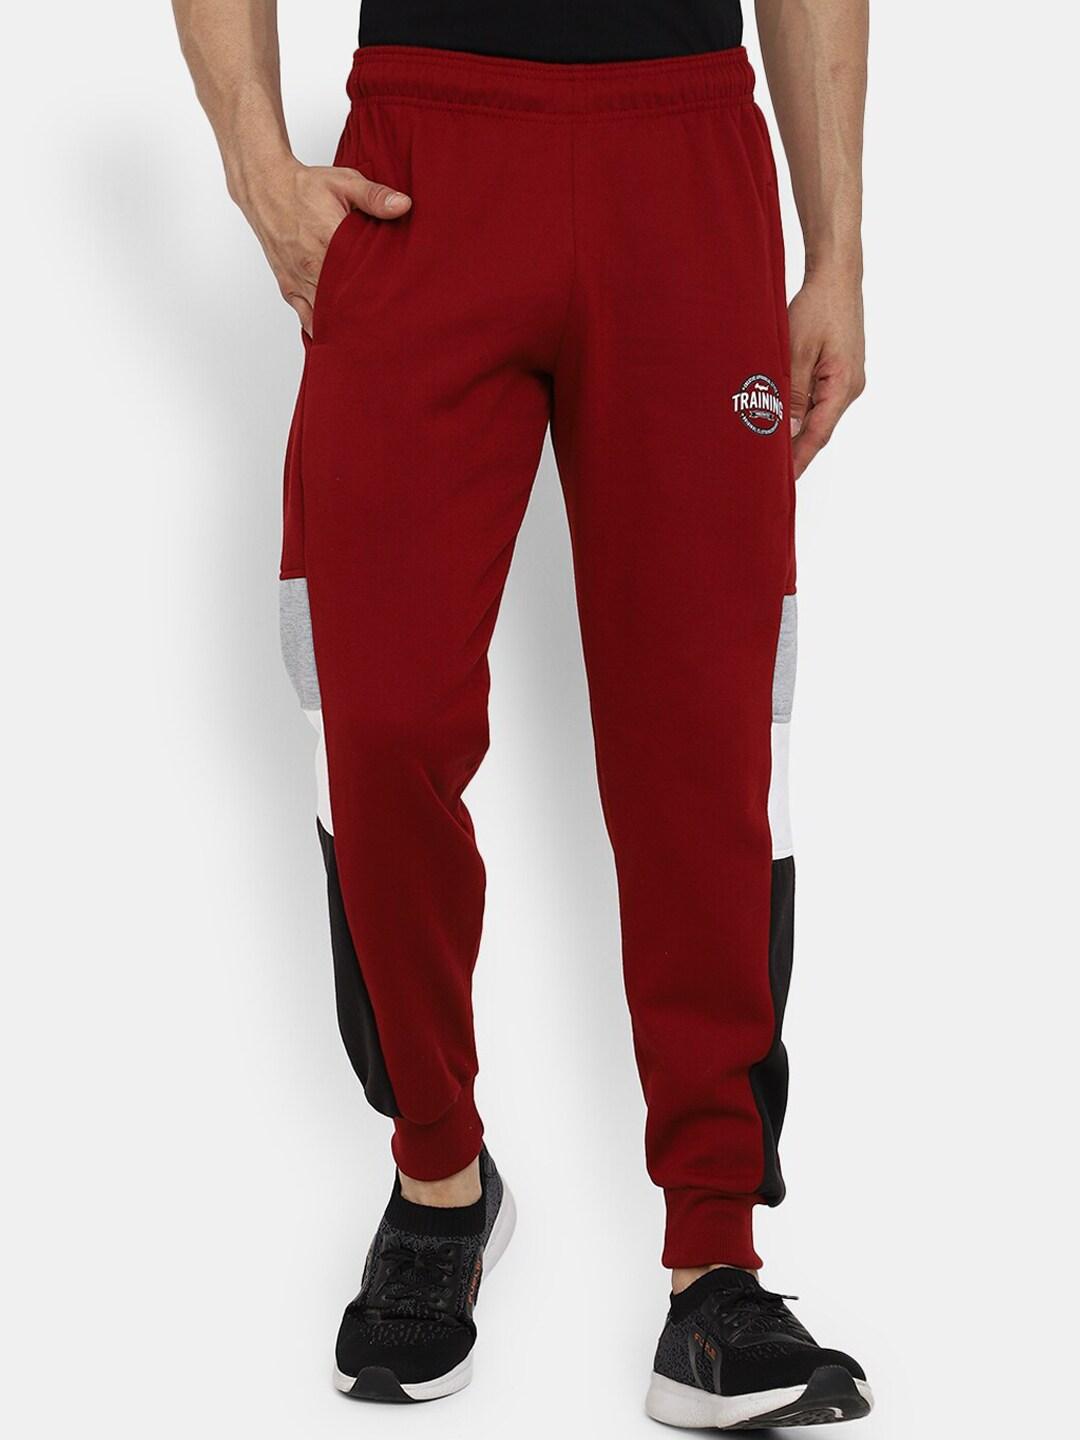 v-mart-men-red-solid-cotton-track-pants